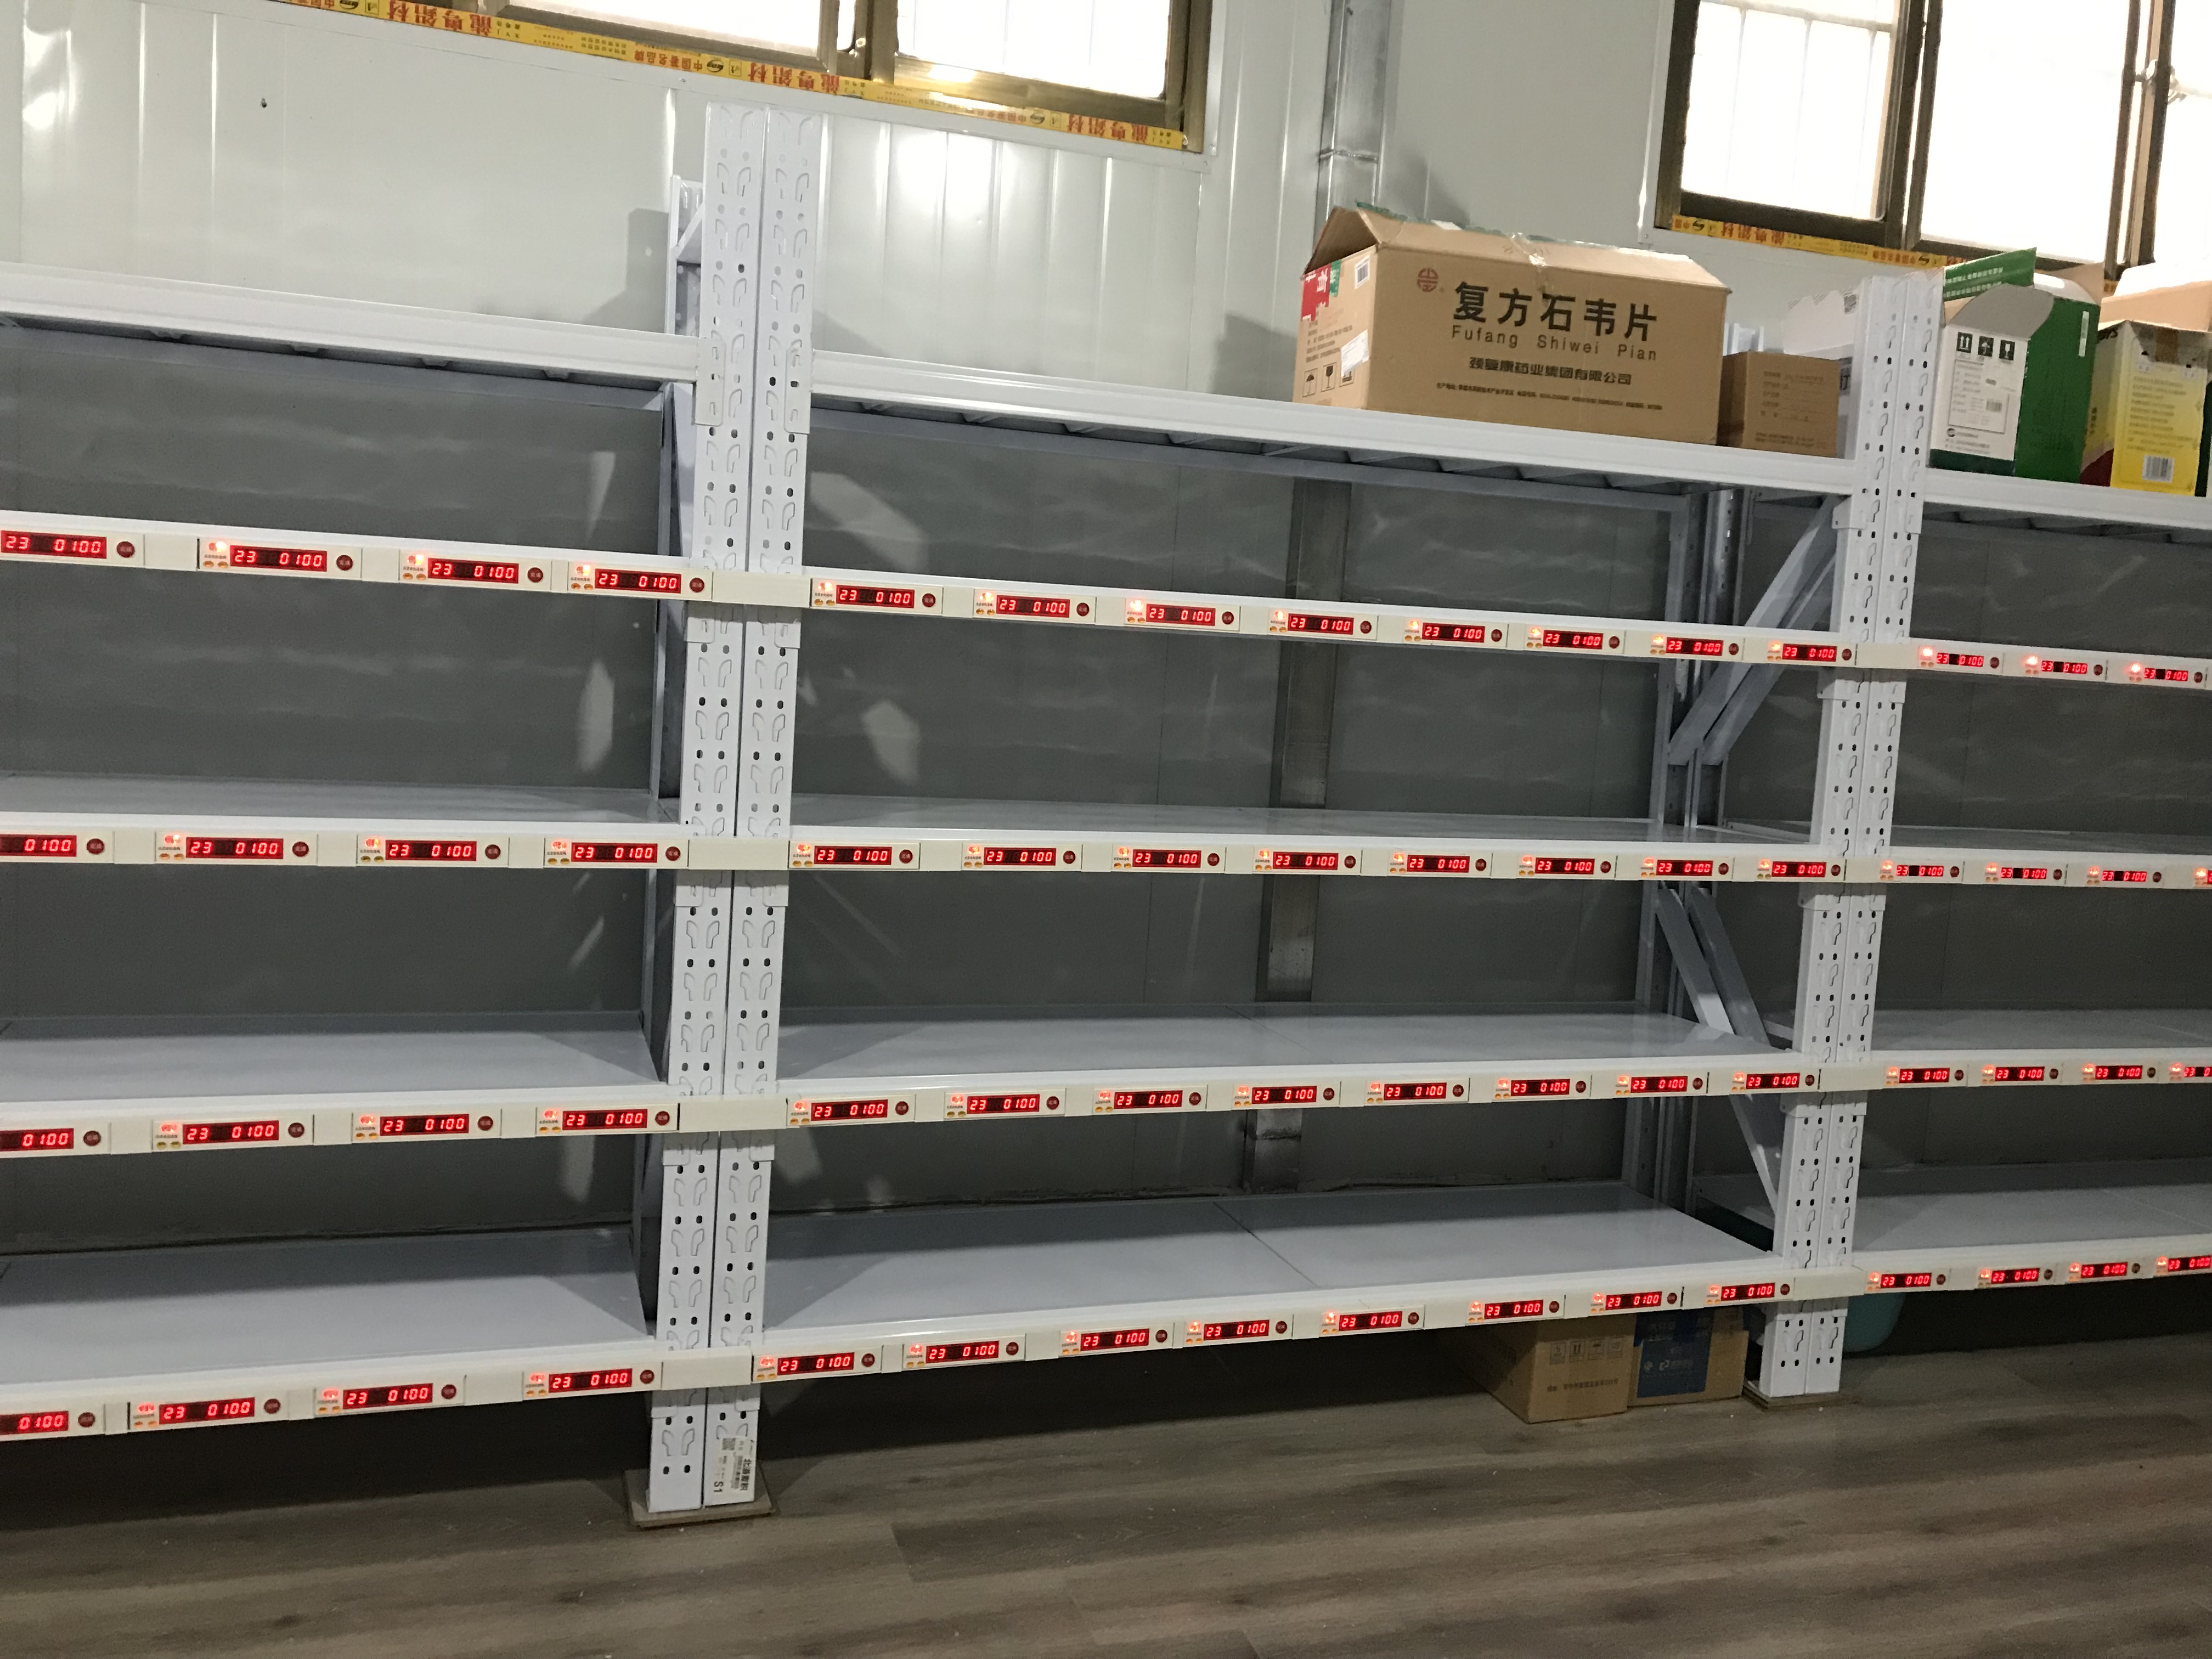 北京市电子标签自动化仓储物流分拣货系统厂家